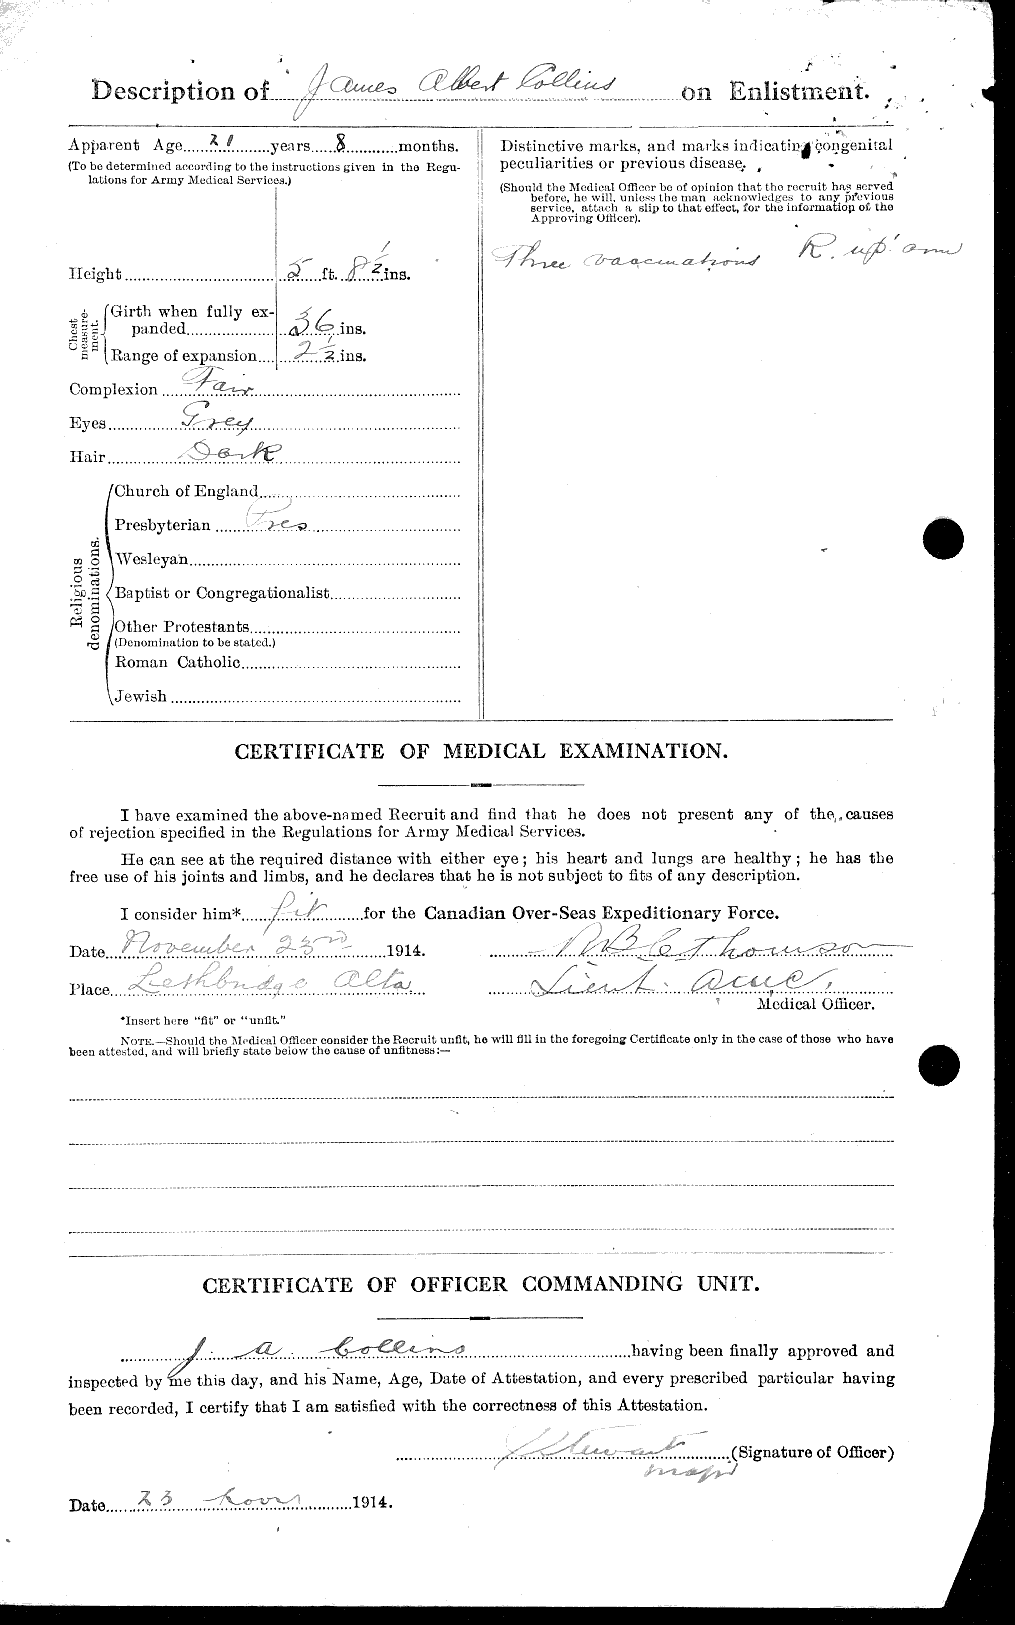 Dossiers du Personnel de la Première Guerre mondiale - CEC 037924b